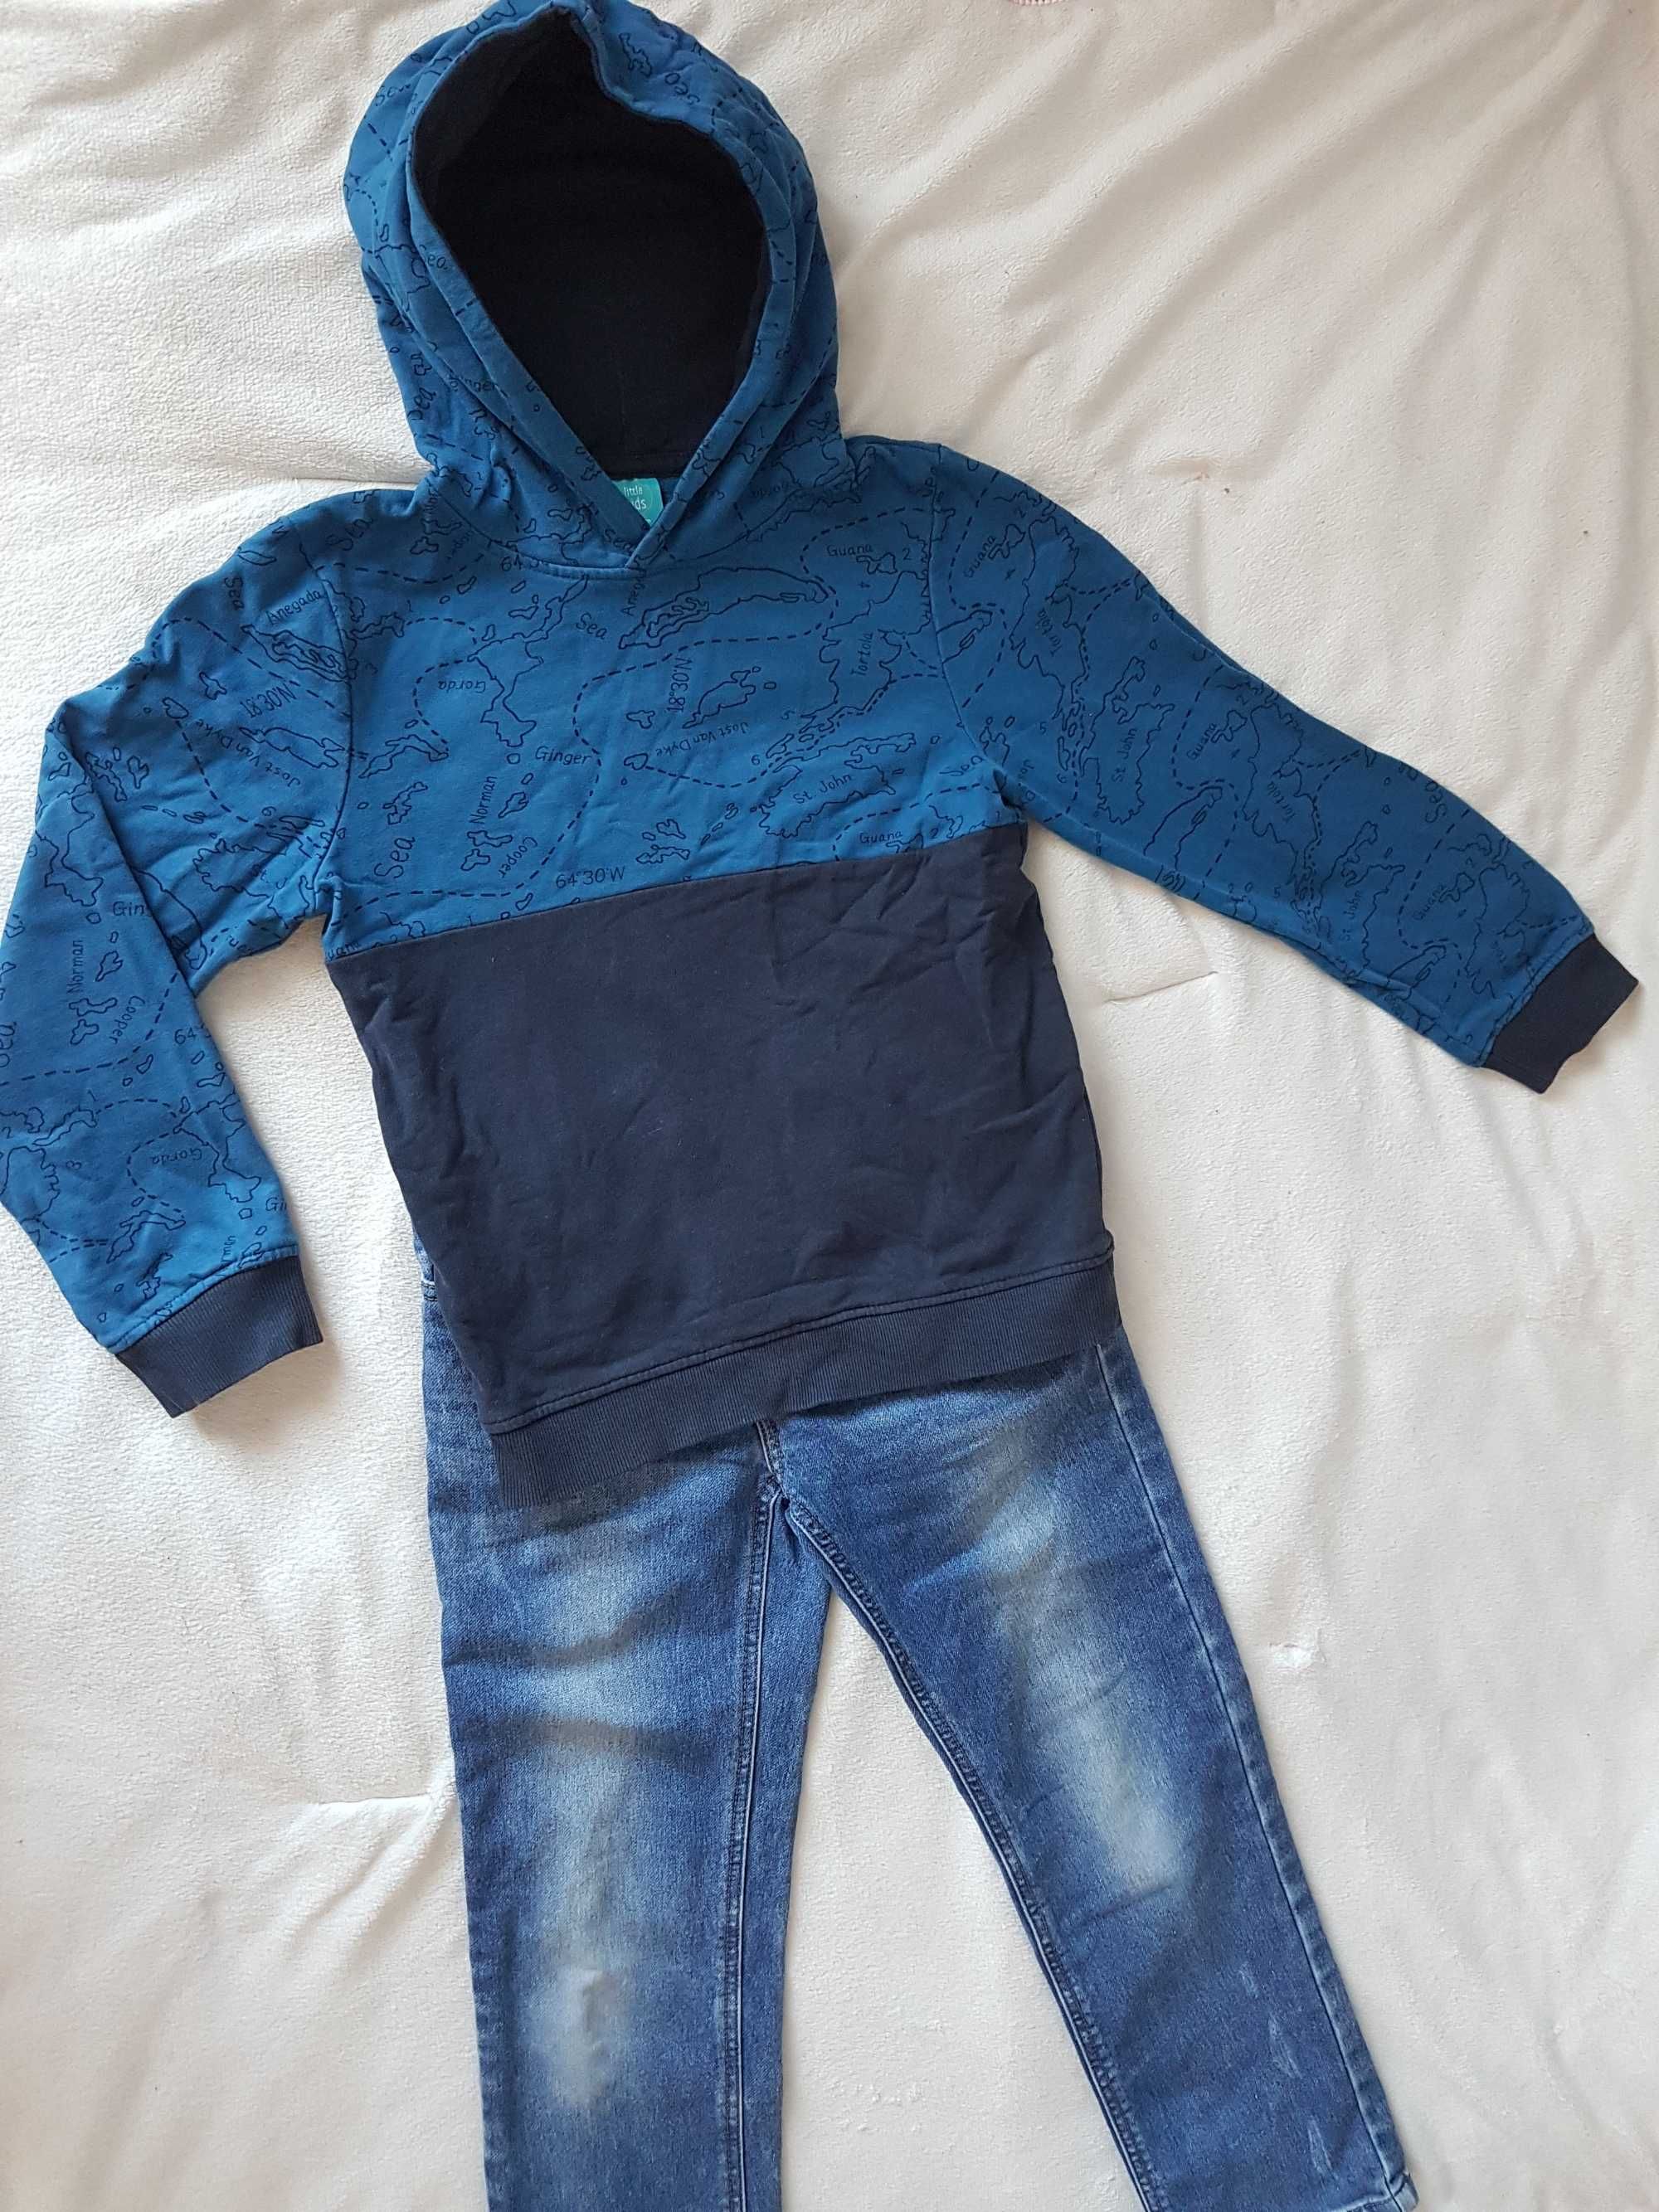 128-134cm Bluza Granatowy, niebieski, bluza, mapa, kaptur, ściągacze